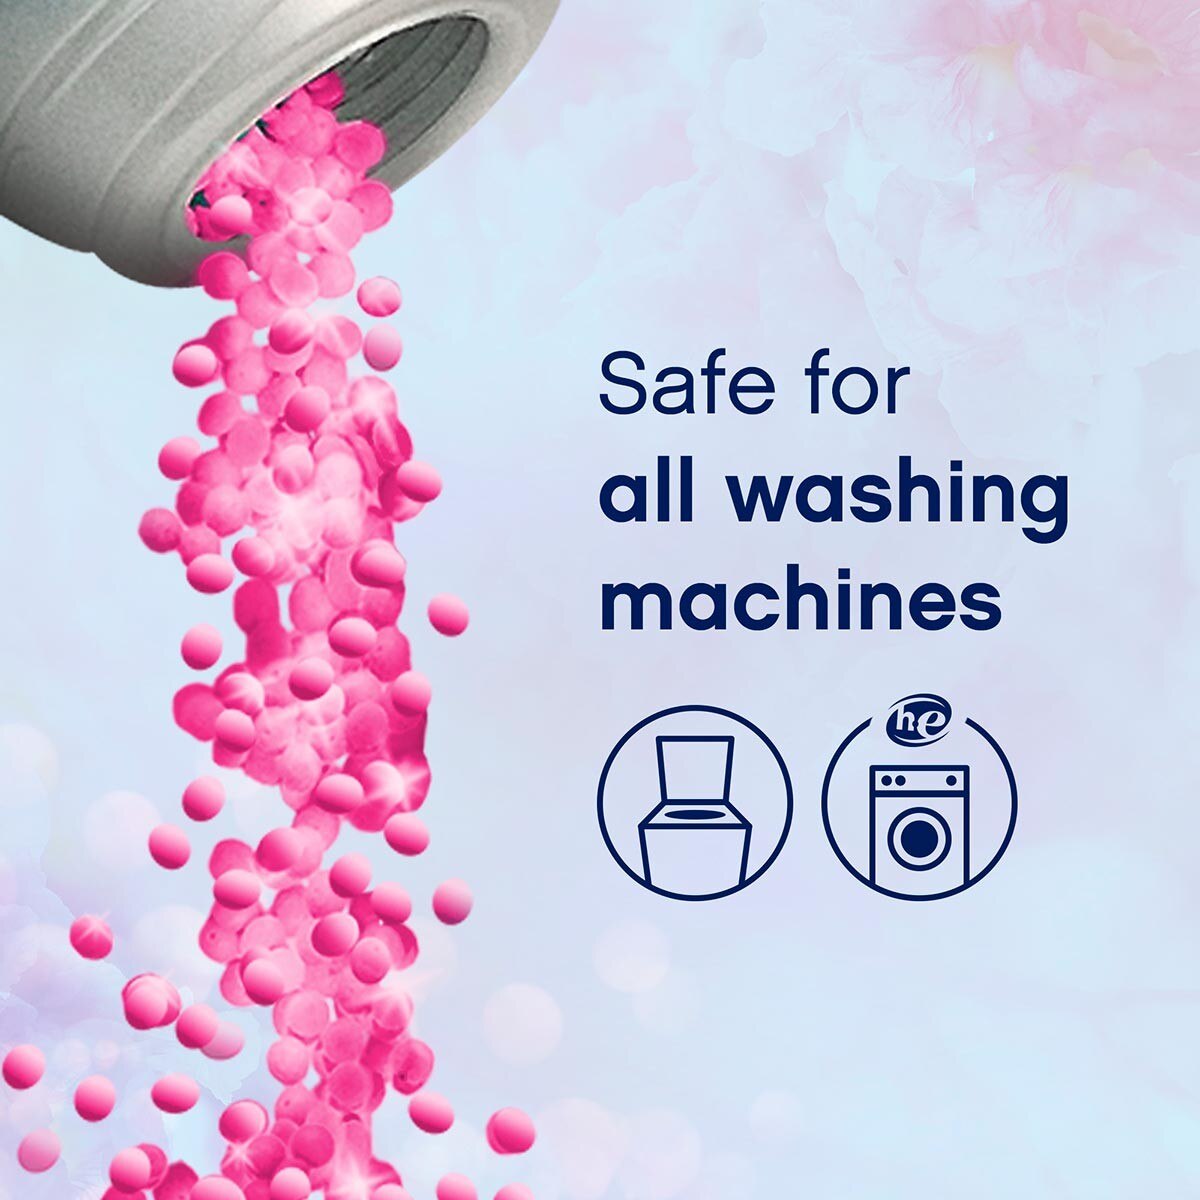 DOWNY 衣物芳香粒 四月清香，適用於各種洗衣機。